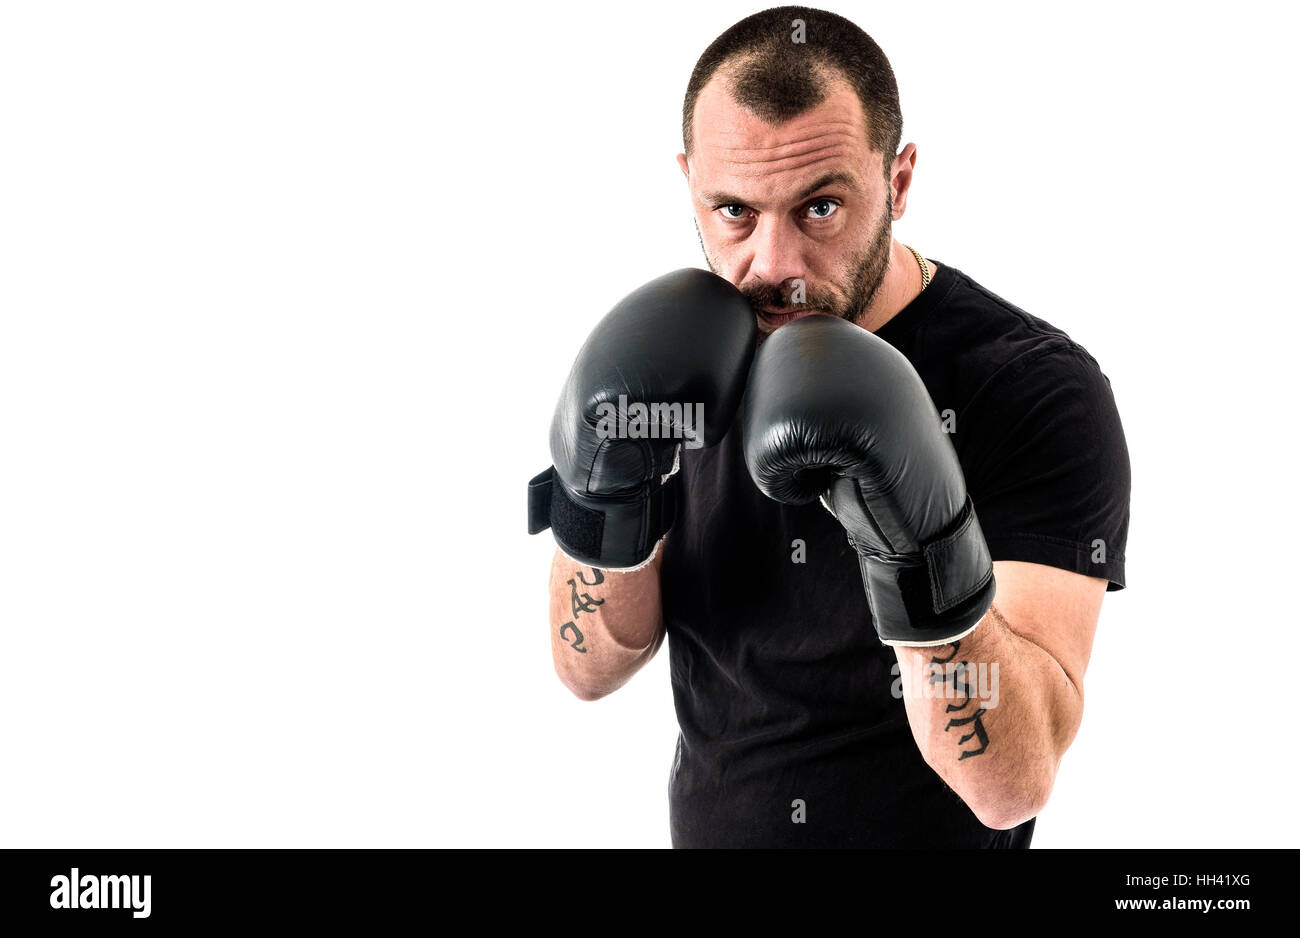 Retrato de atleta masculino boxer hombre mirando agresivo con guantes de boxeo, camisa negra y tatuajes. Aislado sobre fondo blanco. Foto de stock